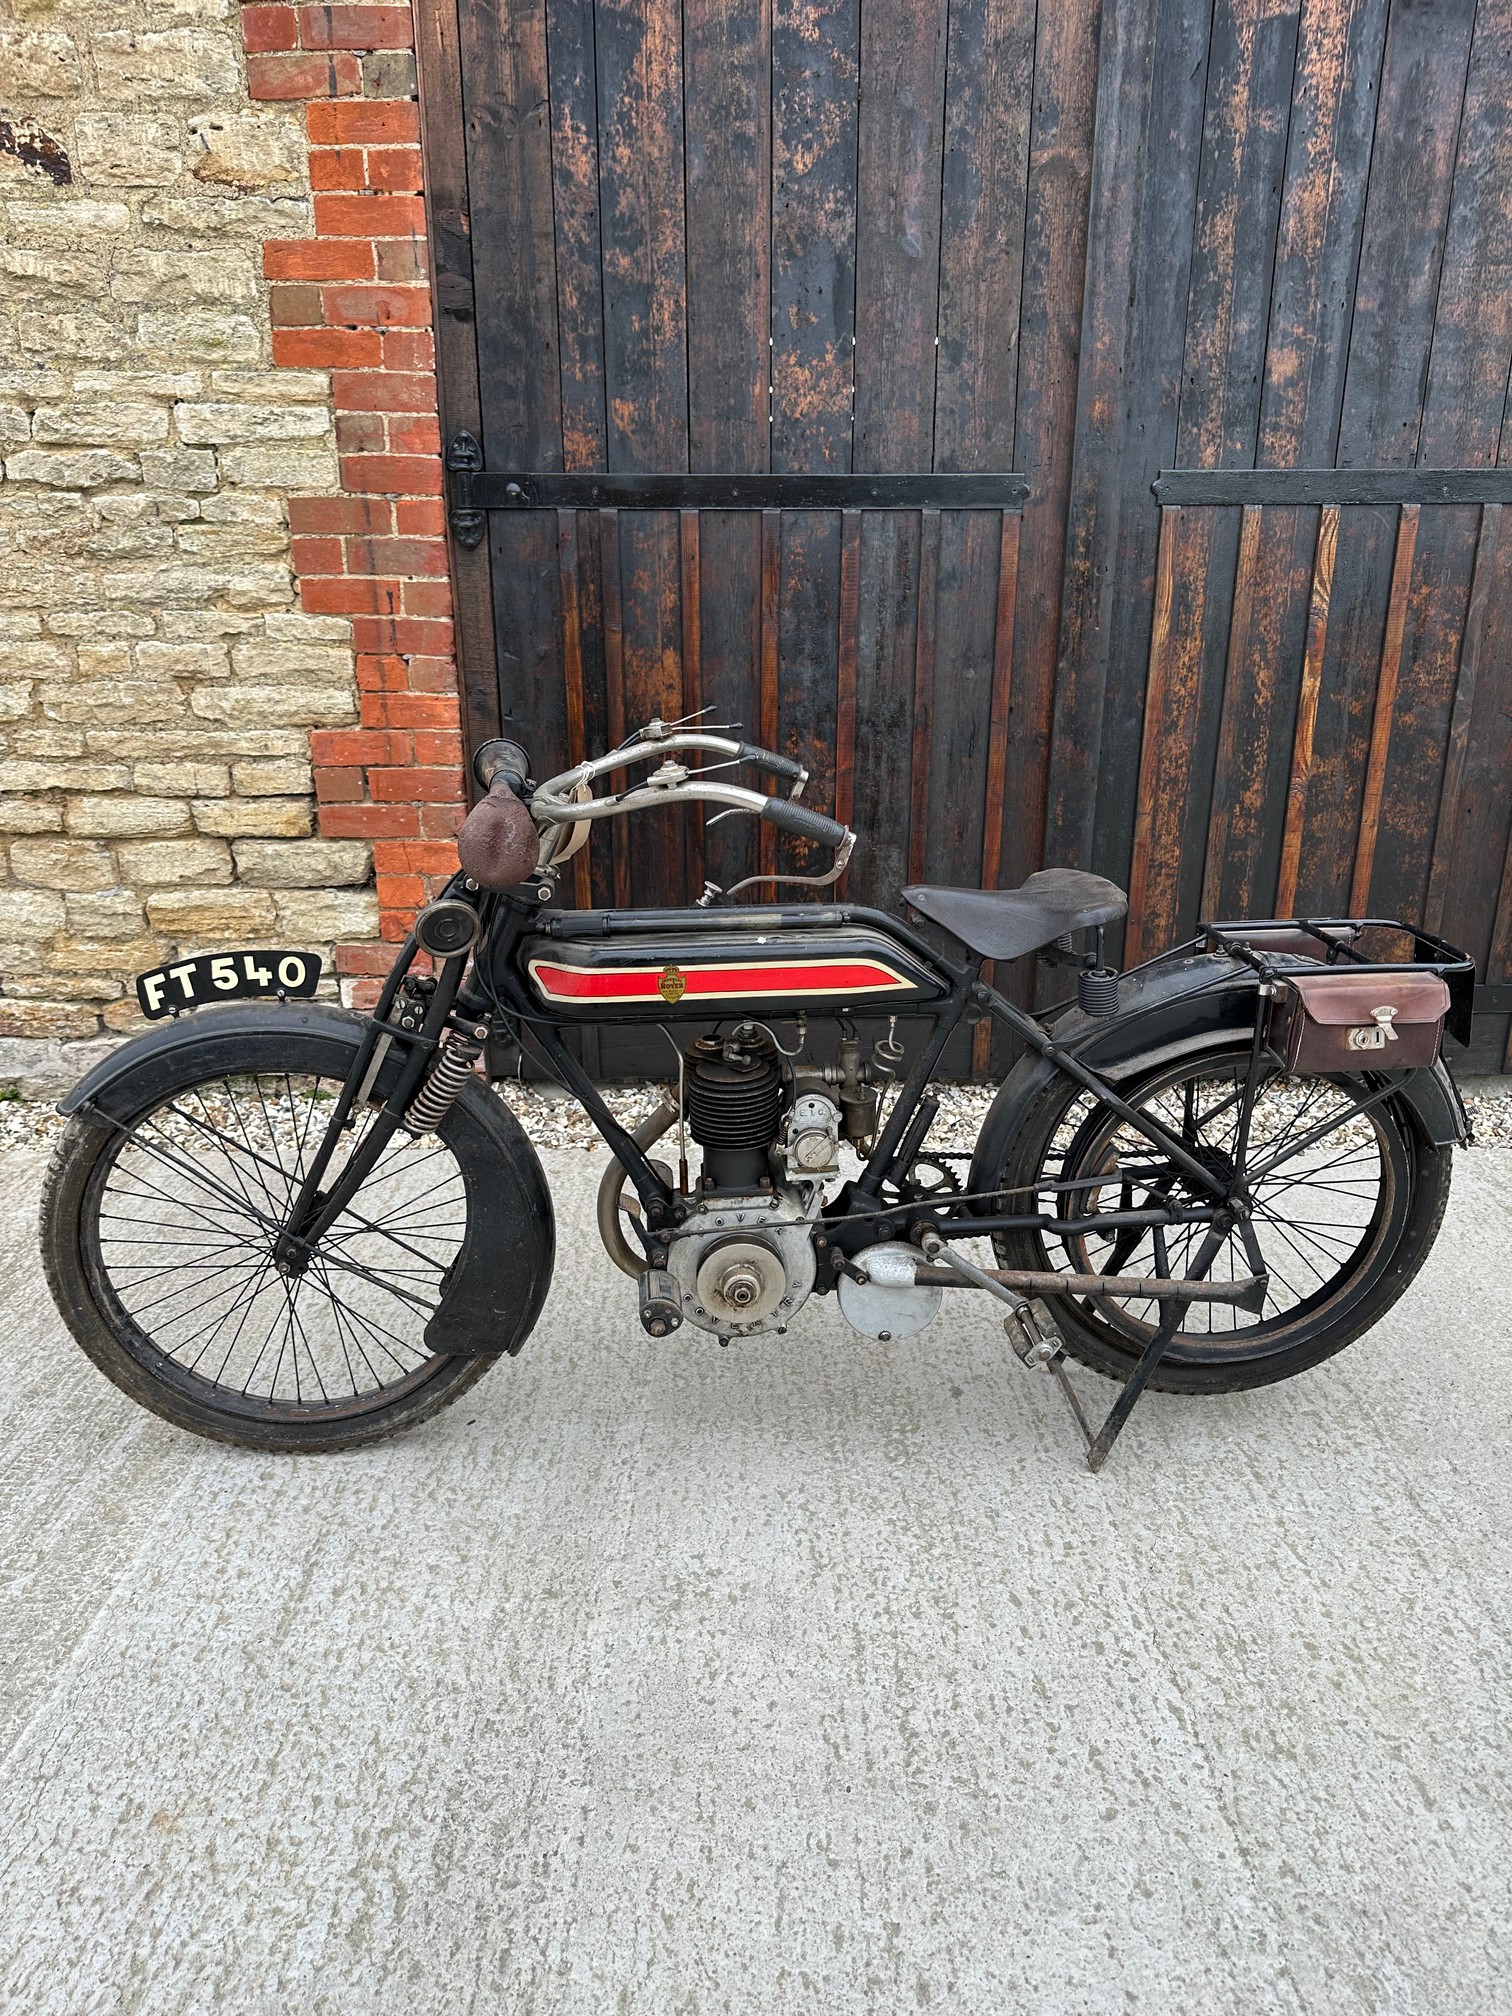 Circa 1912/13 ROVER 499cc 3 1/2HP - Image 4 of 9